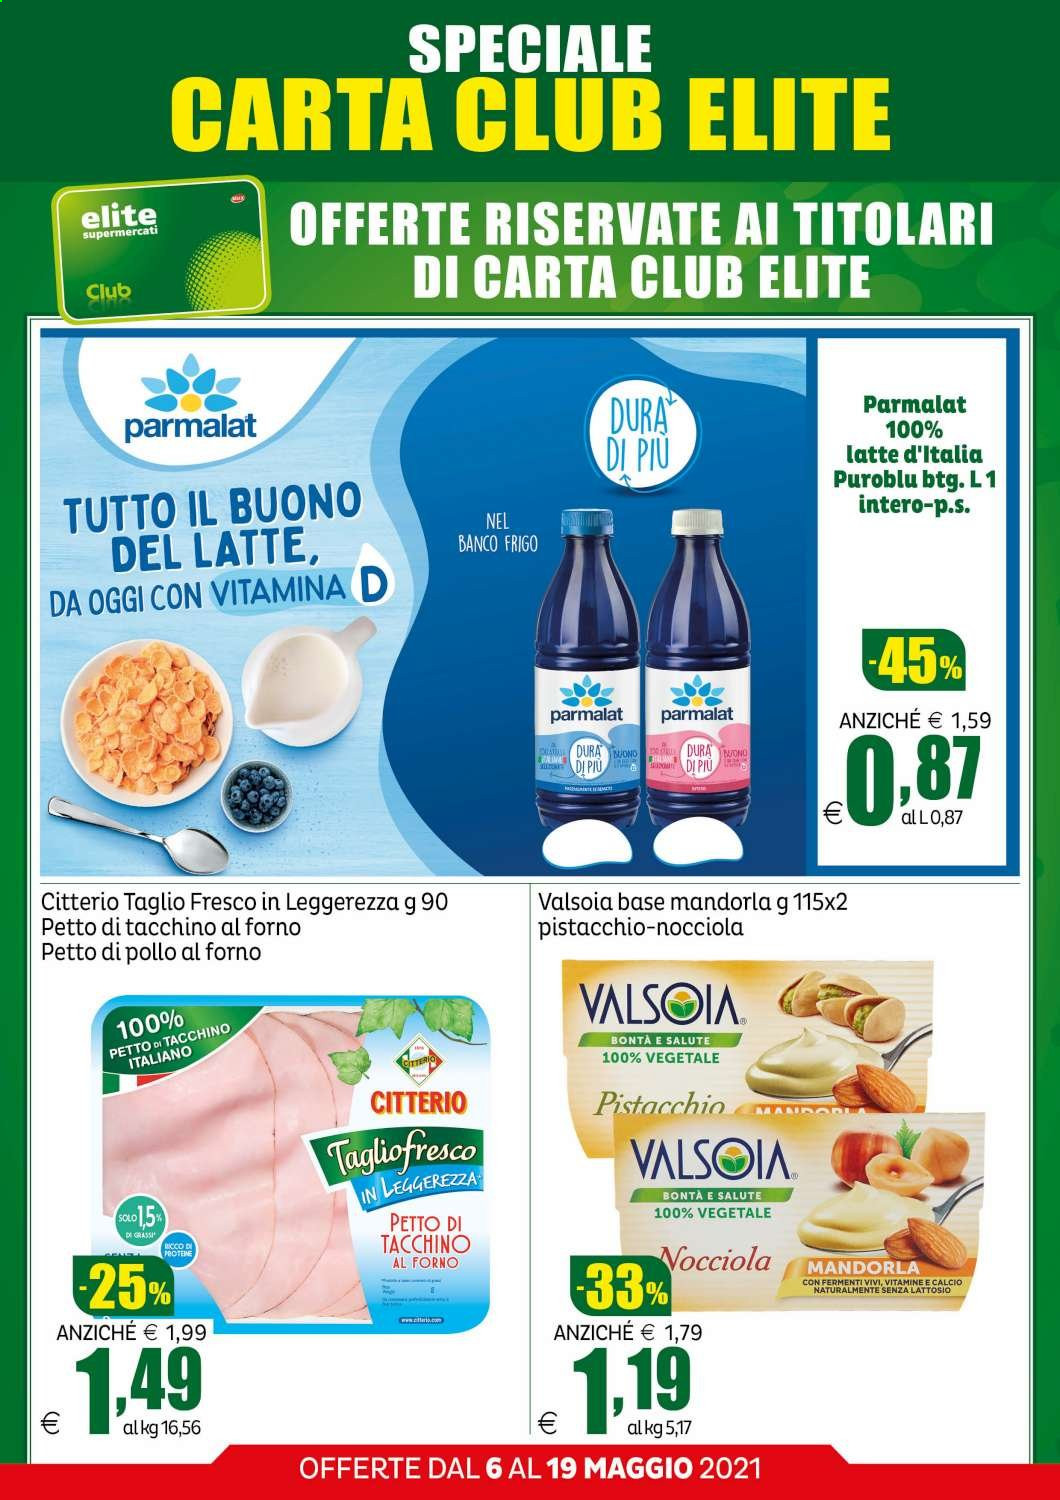 Volantino Elite Supermercati - 6.5.2021 - 19.5.2021.